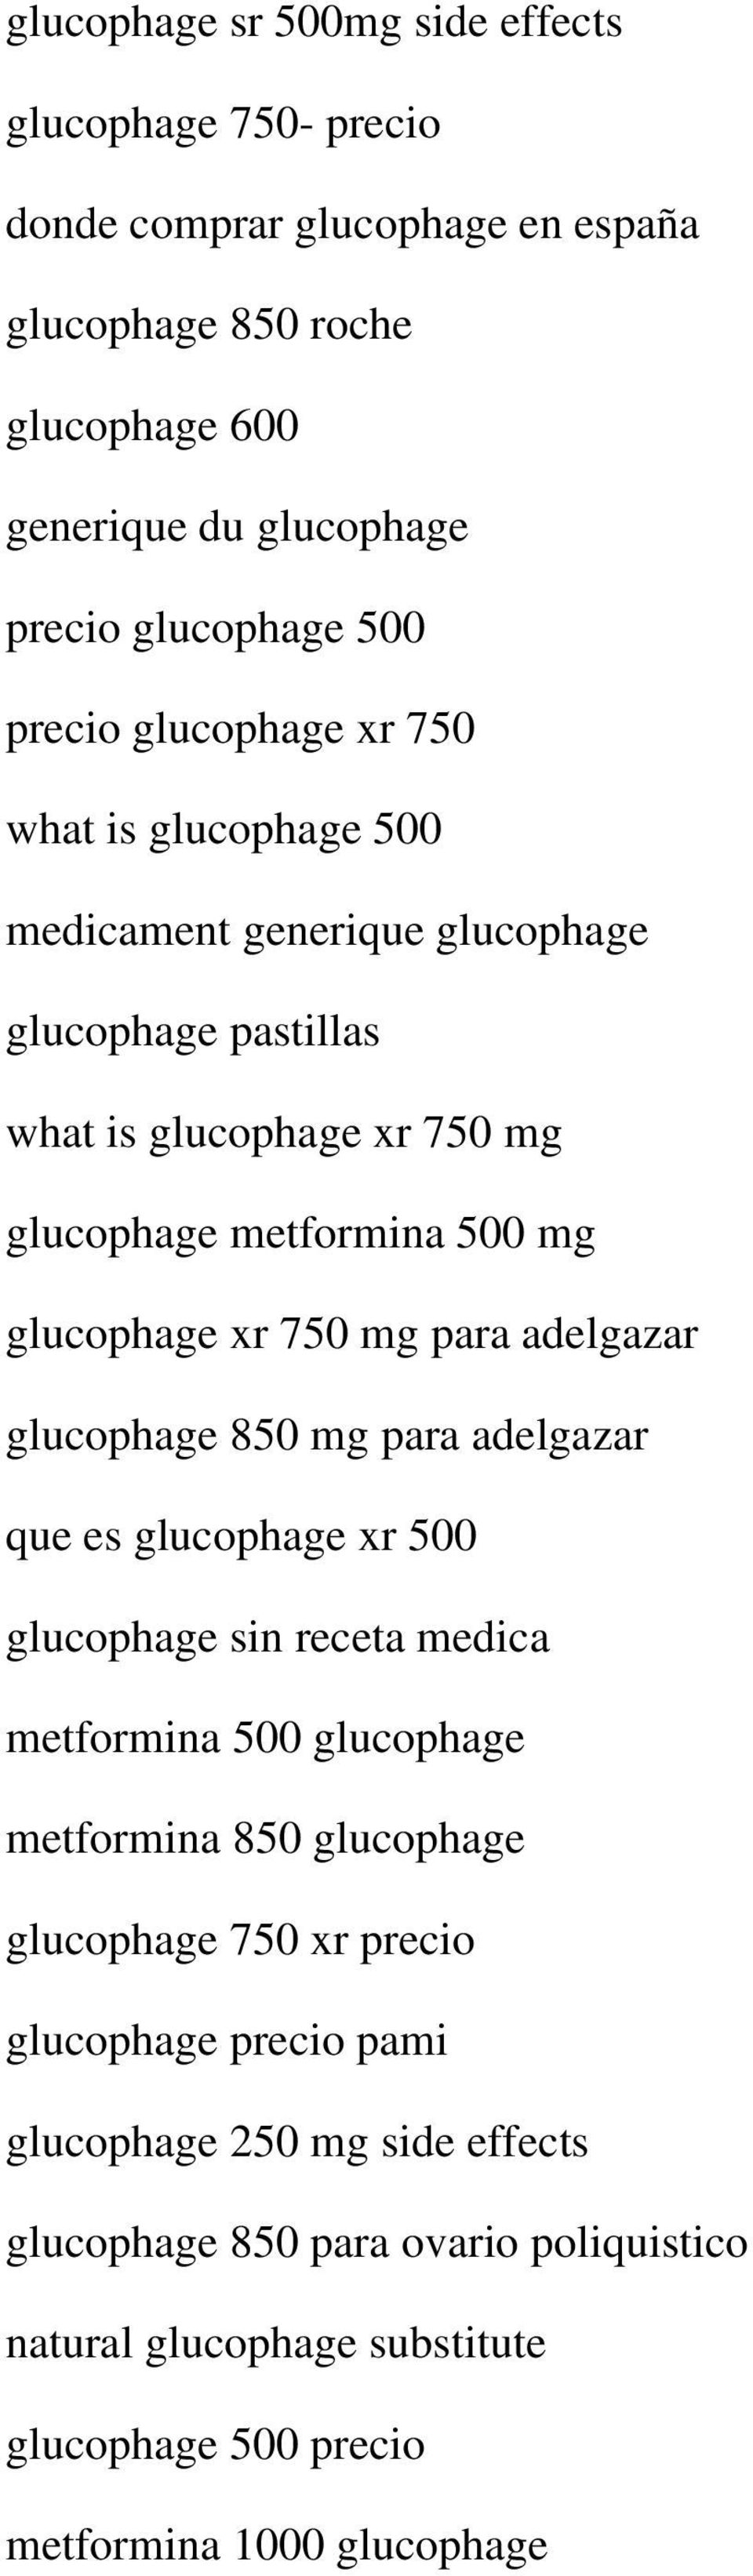 750 mg para adelgazar glucophage 850 mg para adelgazar que es glucophage xr 500 glucophage sin receta medica metformina 500 glucophage metformina 850 glucophage glucophage 750